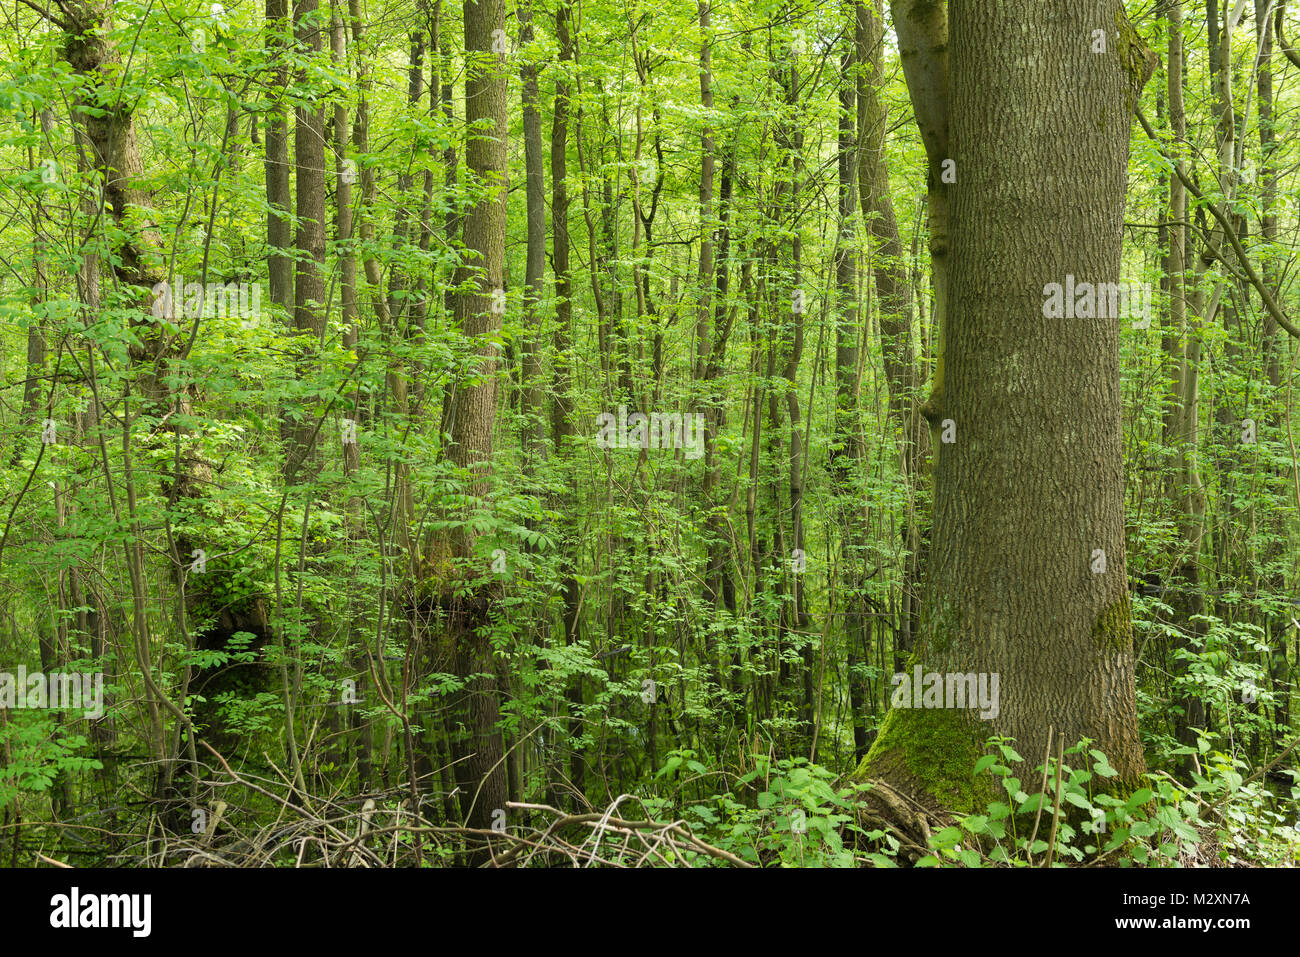 Germania, Baden-Württemberg, Weingartener Moor Naturschutzgebiet, Molla in Weingartener moor Foto Stock